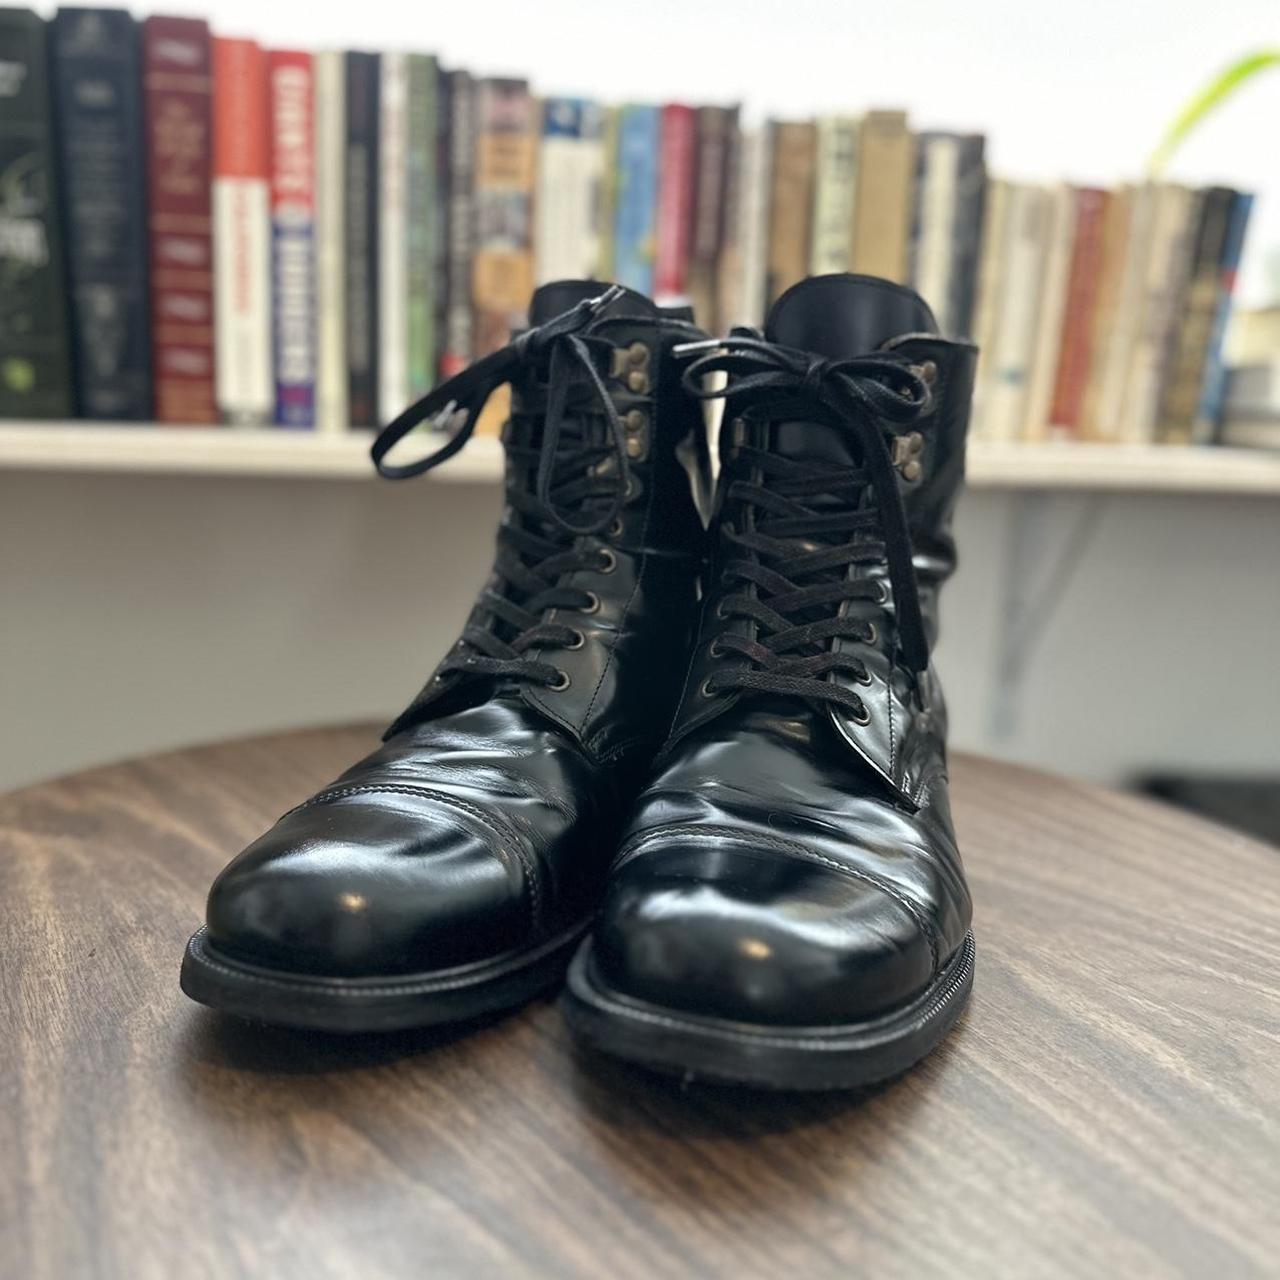 Apolis Men's Black Boots